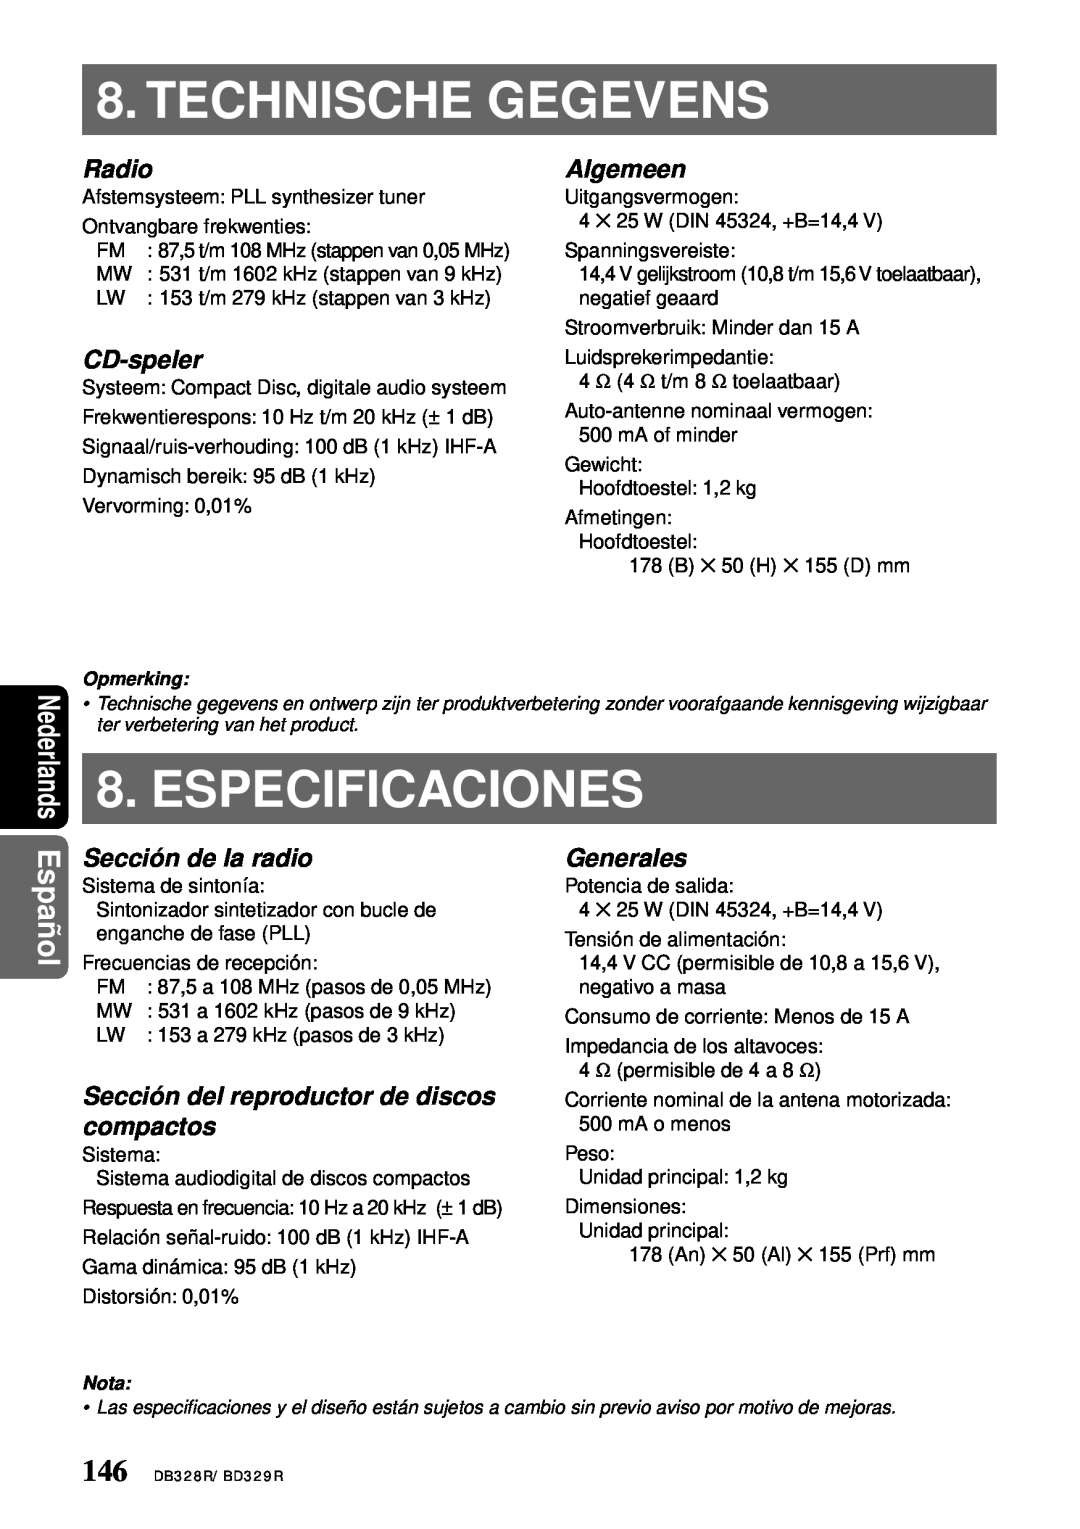 Clarion BD329RG Technische Gegevens, Especificaciones, Radio, CD-speler, Algemeen, Sección de la radio, Generales, Español 